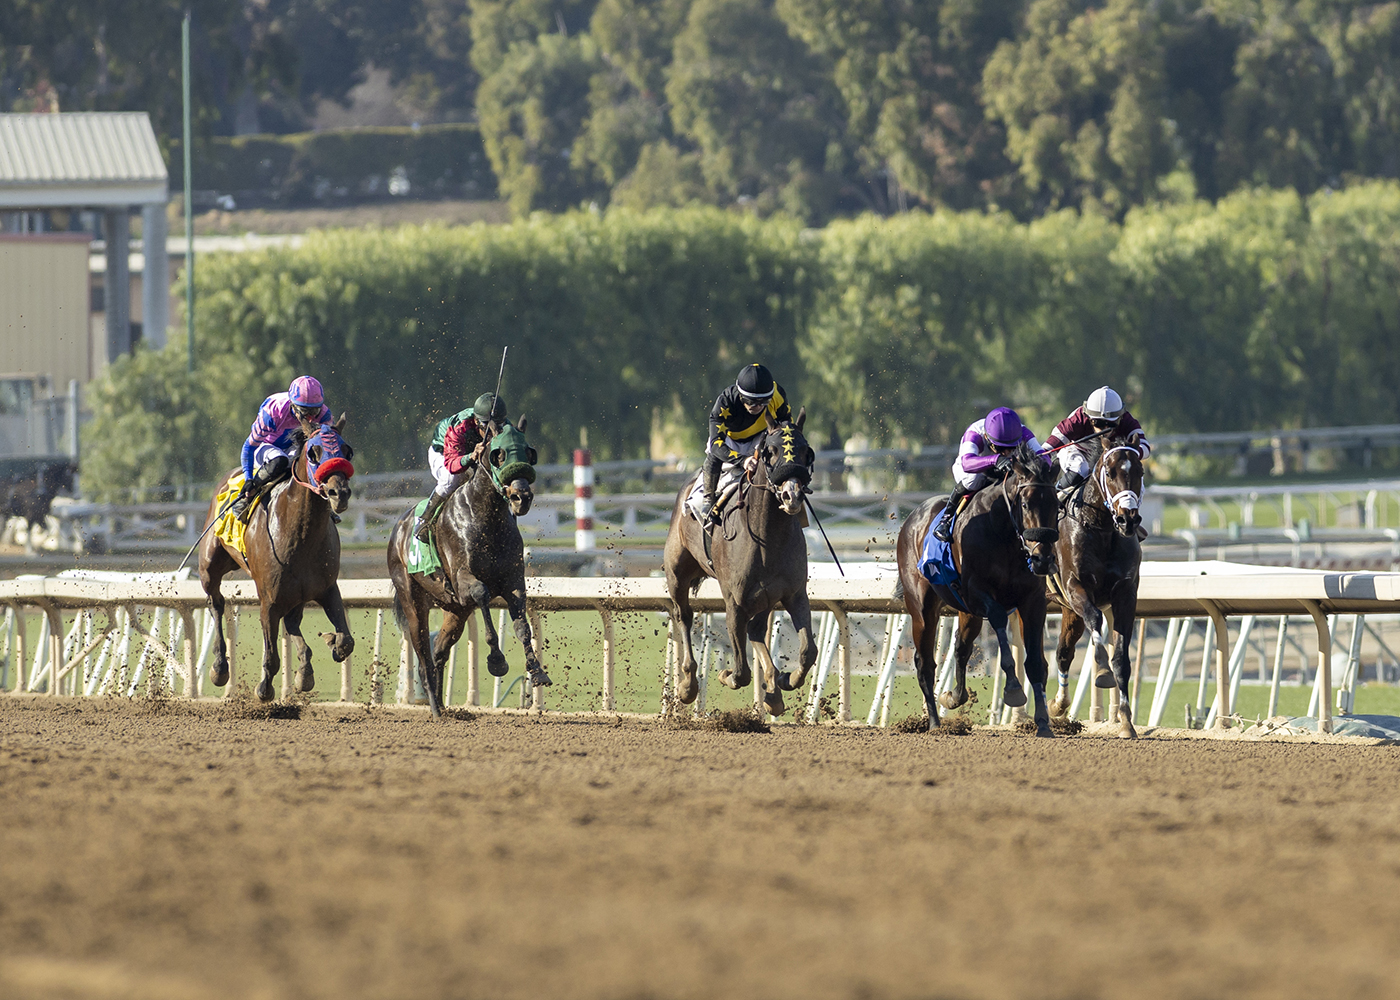 Mici's Express wins at Santa Anita in horse racing action